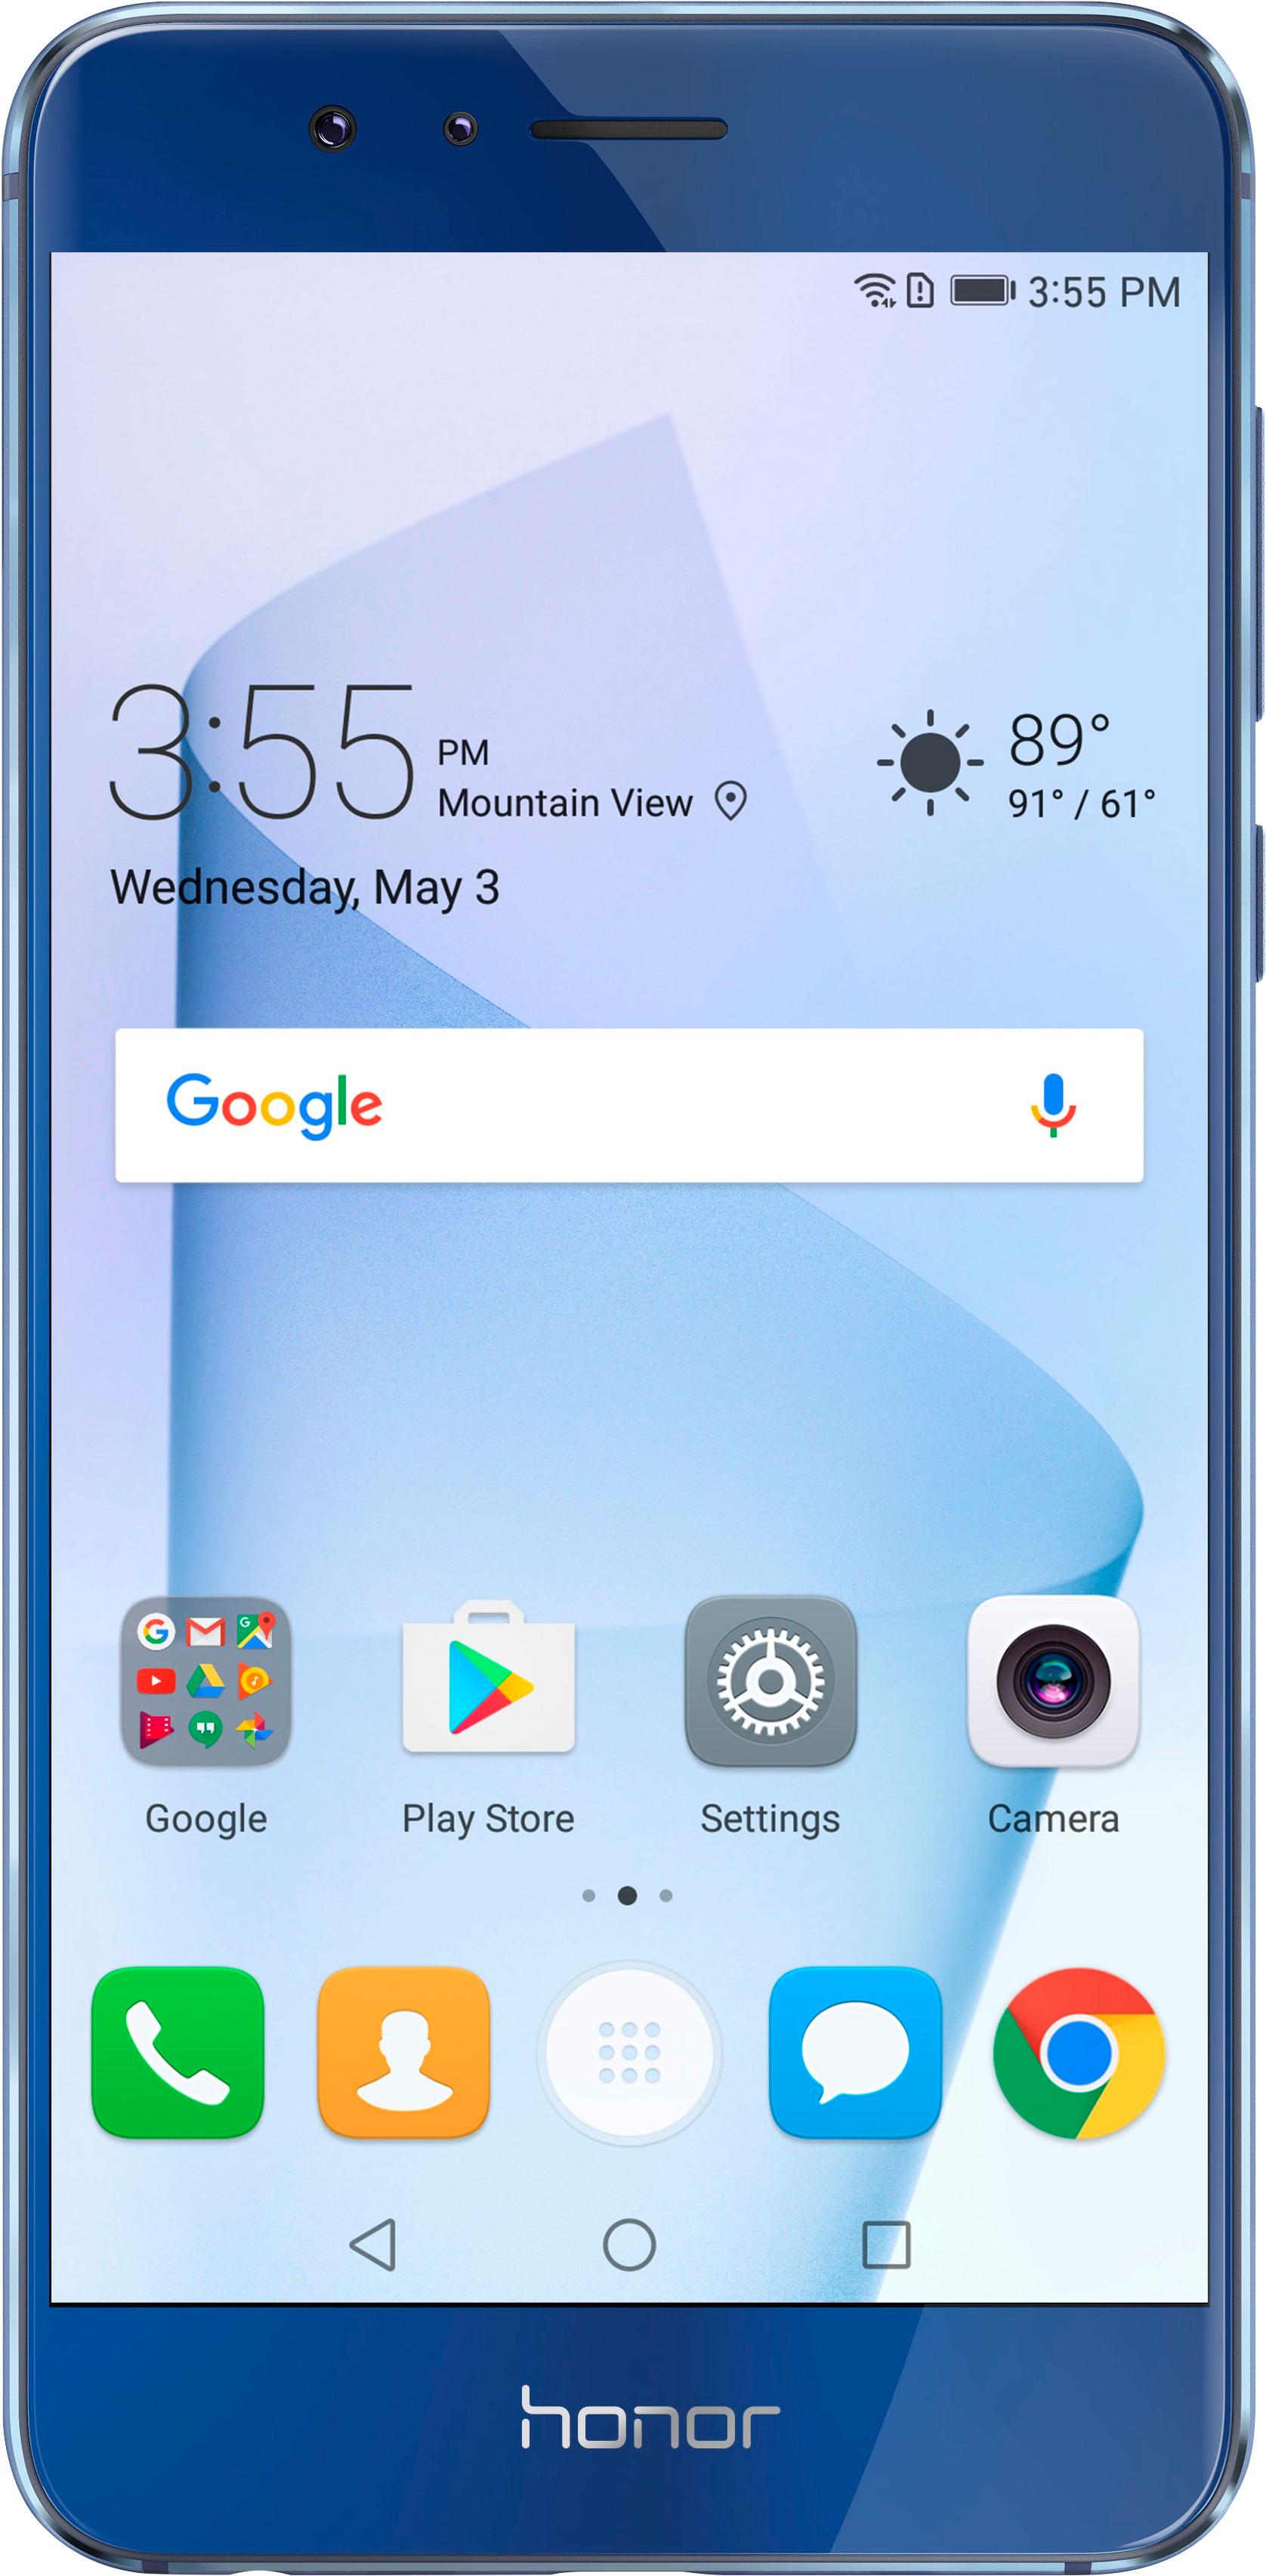 Beringstraat Berg Vesuvius Becks Huawei Honor 8 4G LTE with 64GB Memory Cell Phone (Unlocked) Sapphire blue  FRD-L14 - Best Buy